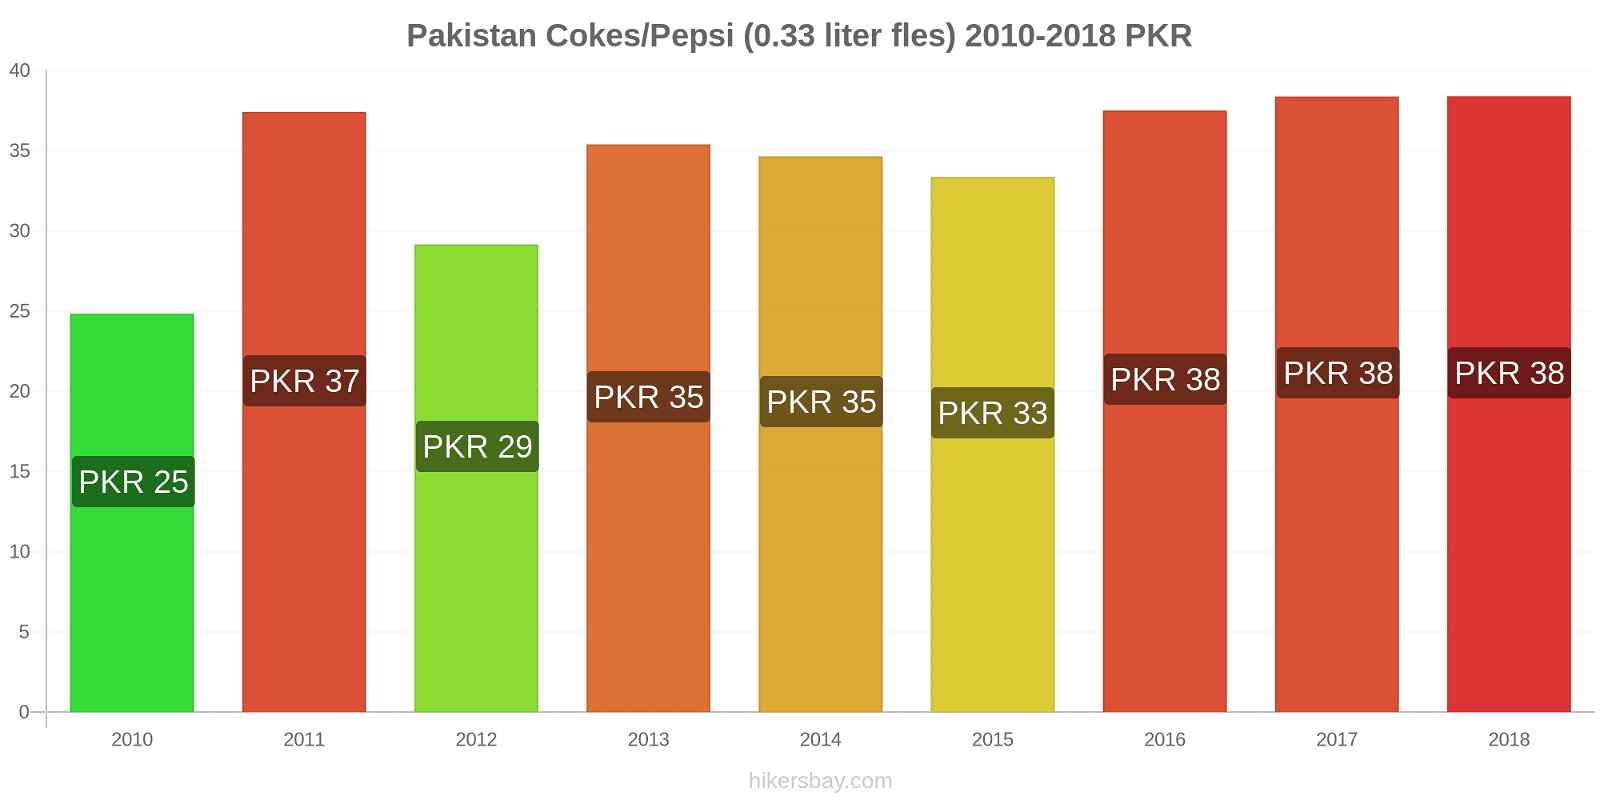 Pakistan prijswijzigingen Coca-Cola/Pepsi (0.33 liter fles) hikersbay.com